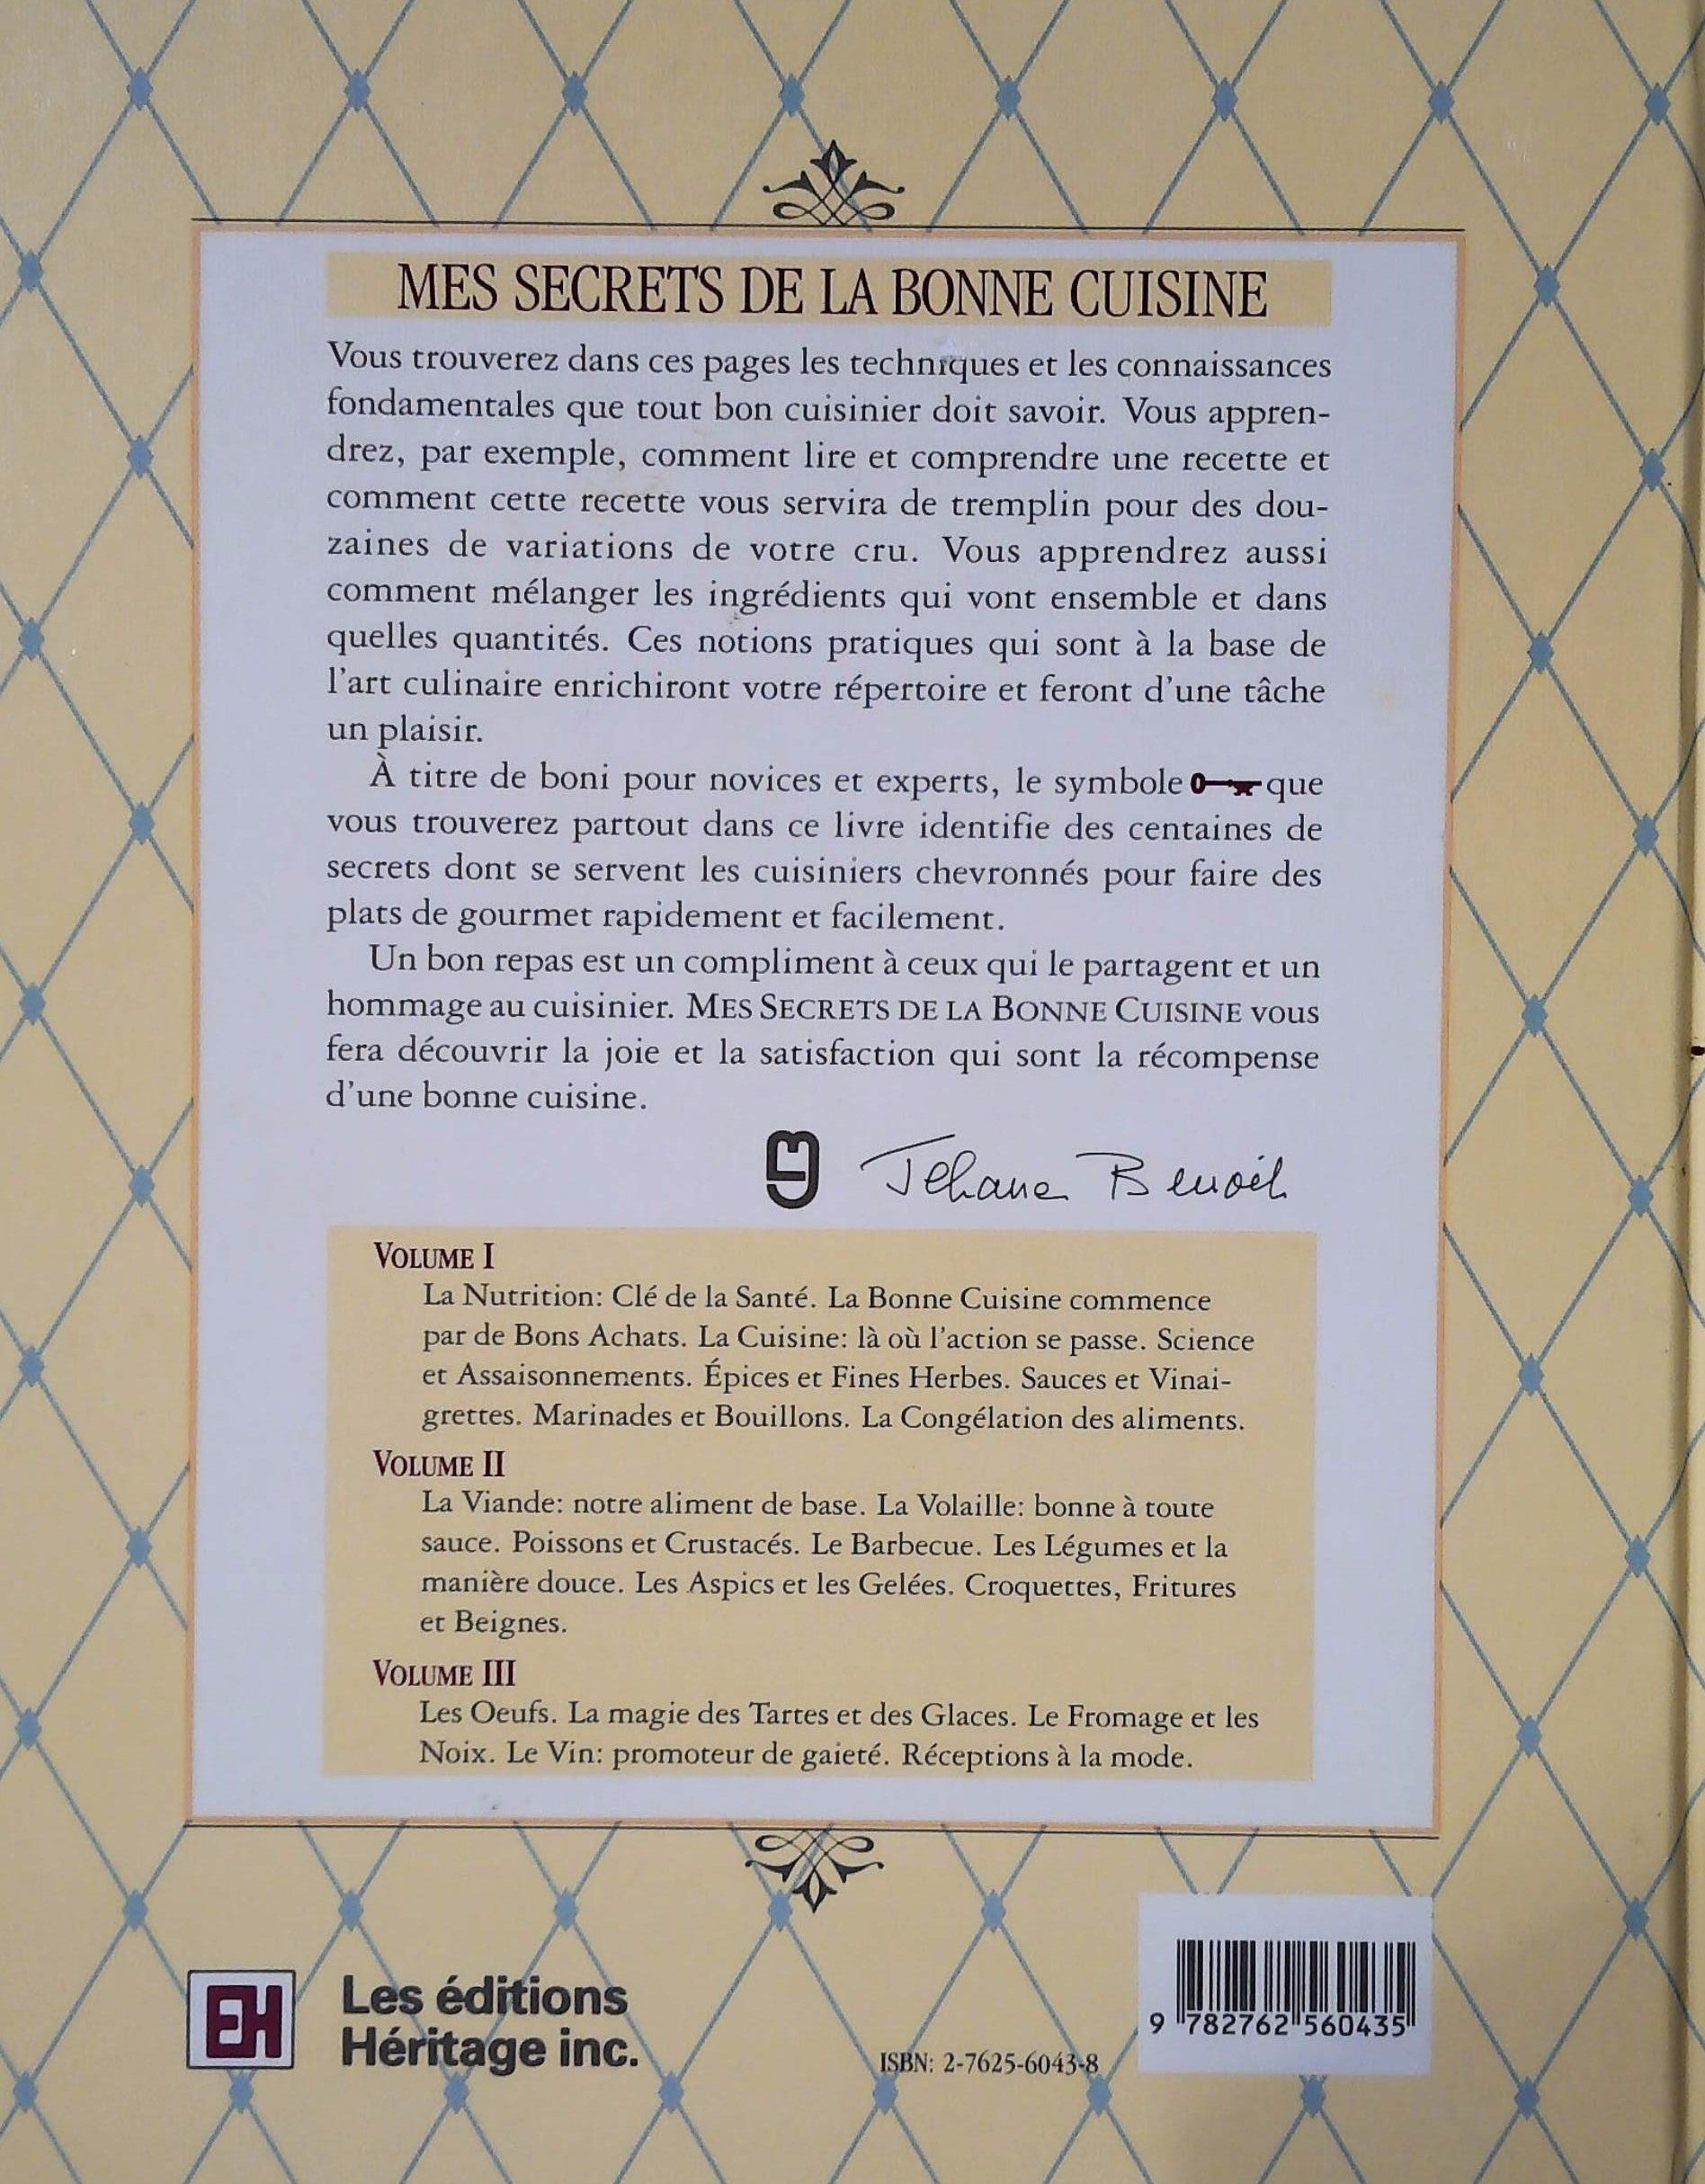 Mes secret de la bonne cuisine volume 3 (Jehane Benoit)